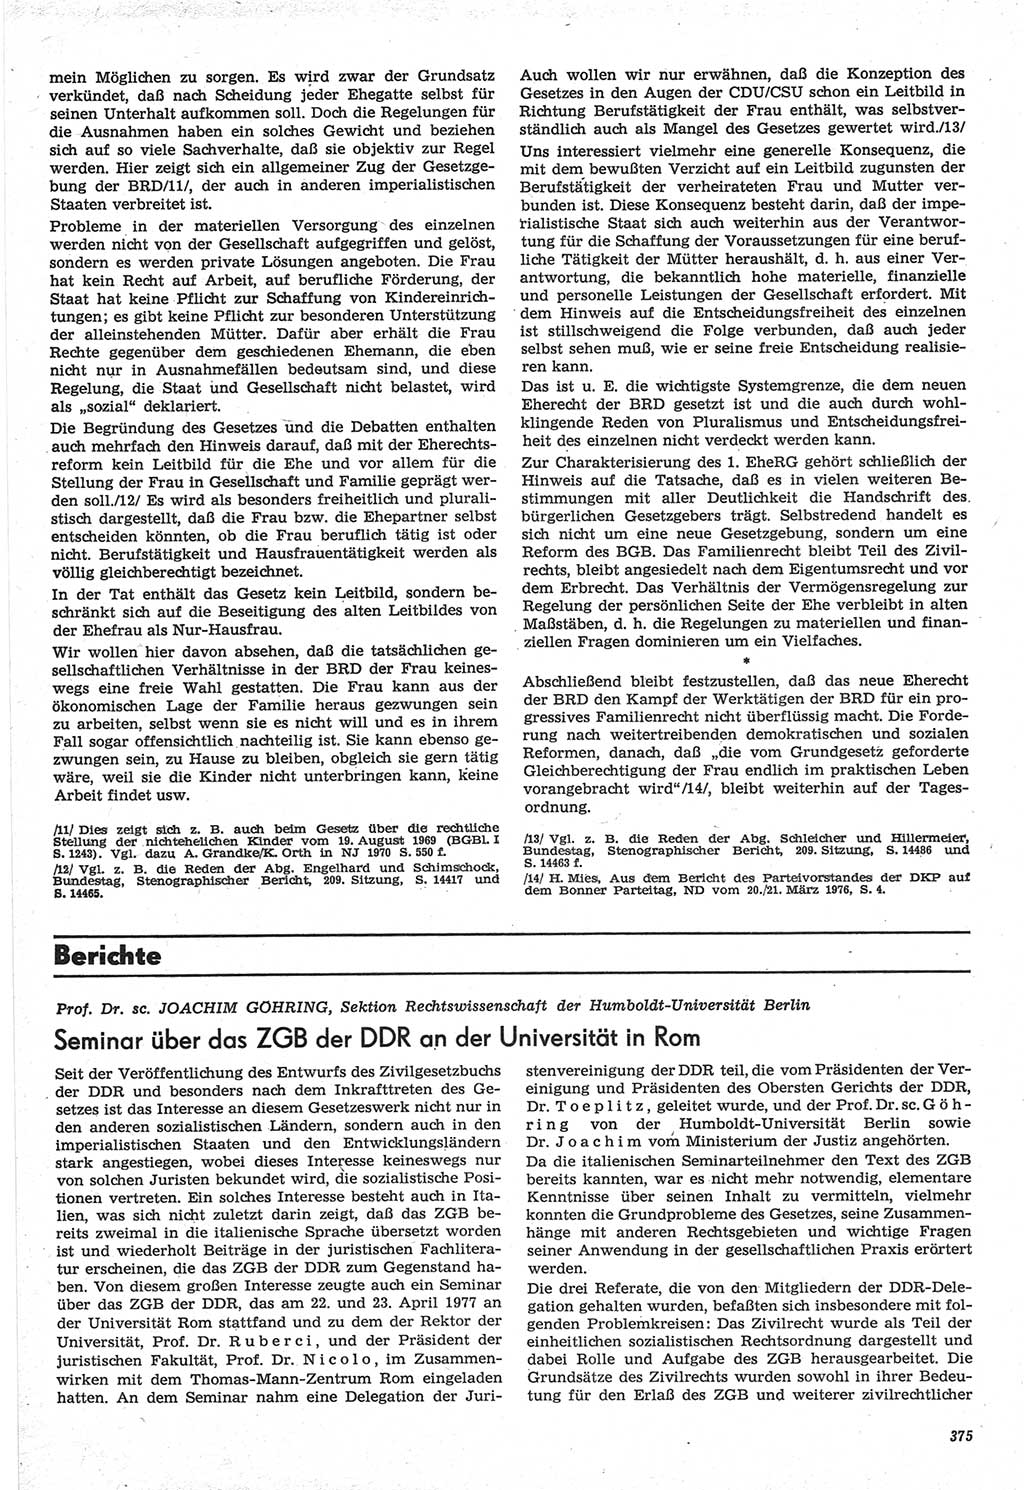 Neue Justiz (NJ), Zeitschrift für Recht und Rechtswissenschaft-Zeitschrift, sozialistisches Recht und Gesetzlichkeit, 31. Jahrgang 1977, Seite 375 (NJ DDR 1977, S. 375)